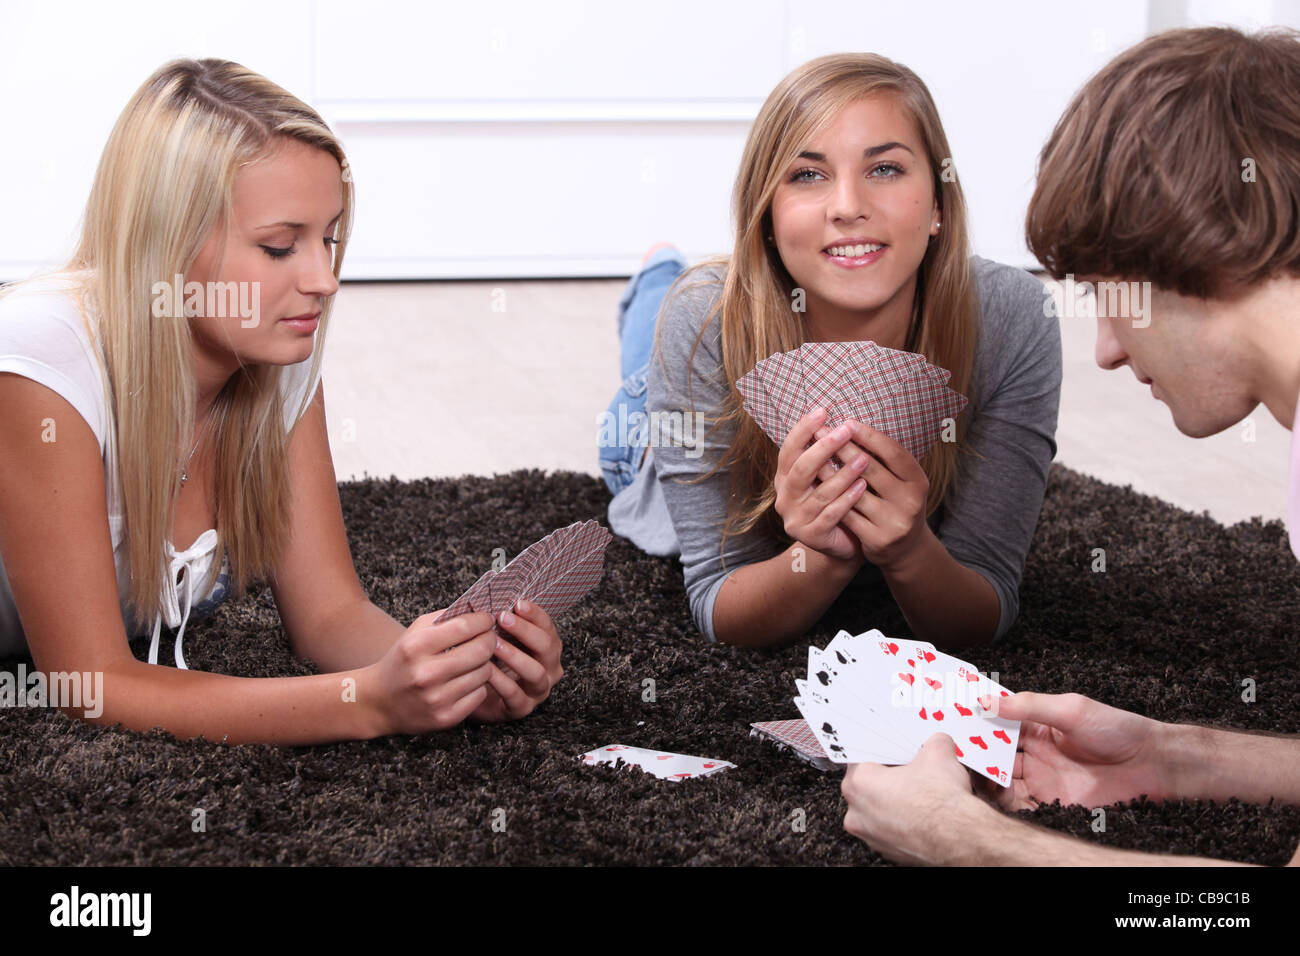 Игра на раздевание сестра брат. Мальчик и девочка играют в карты. Девочки играют в карты. Девочки играют в карты на раздевание. Девушки играющие в карты.